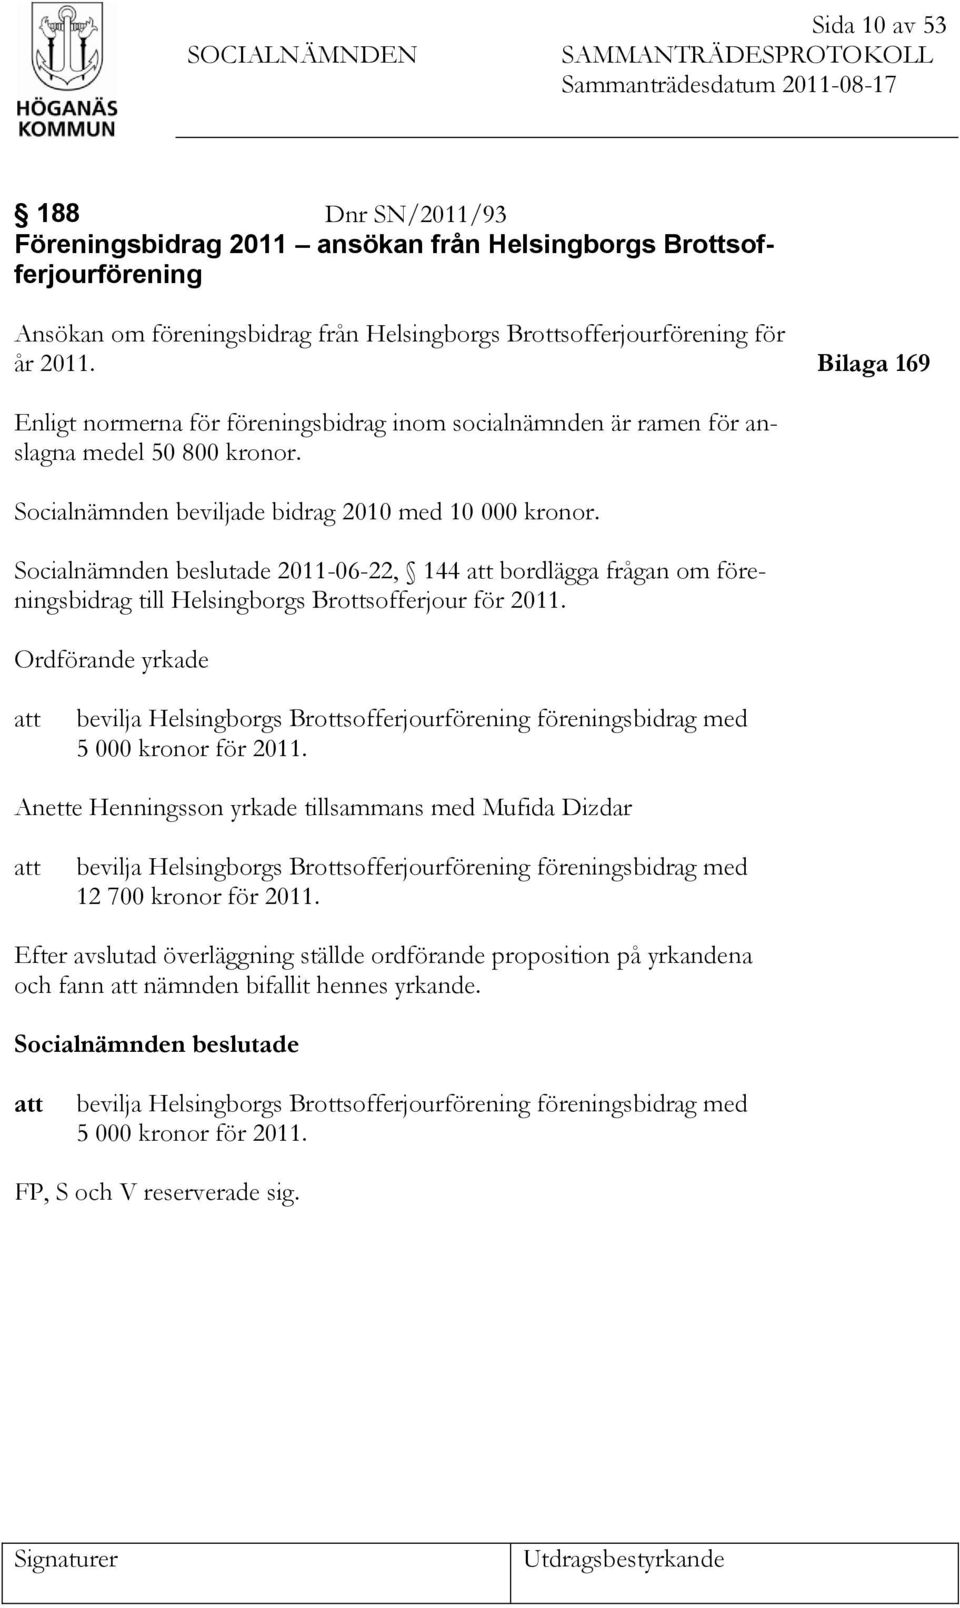 Socialnämnden beviljade bidrag 2010 med 10 000 kronor. Socialnämnden beslutade 2011-06-22, 144 att bordlägga frågan om föreningsbidrag till Helsingborgs Brottsofferjour för 2011.